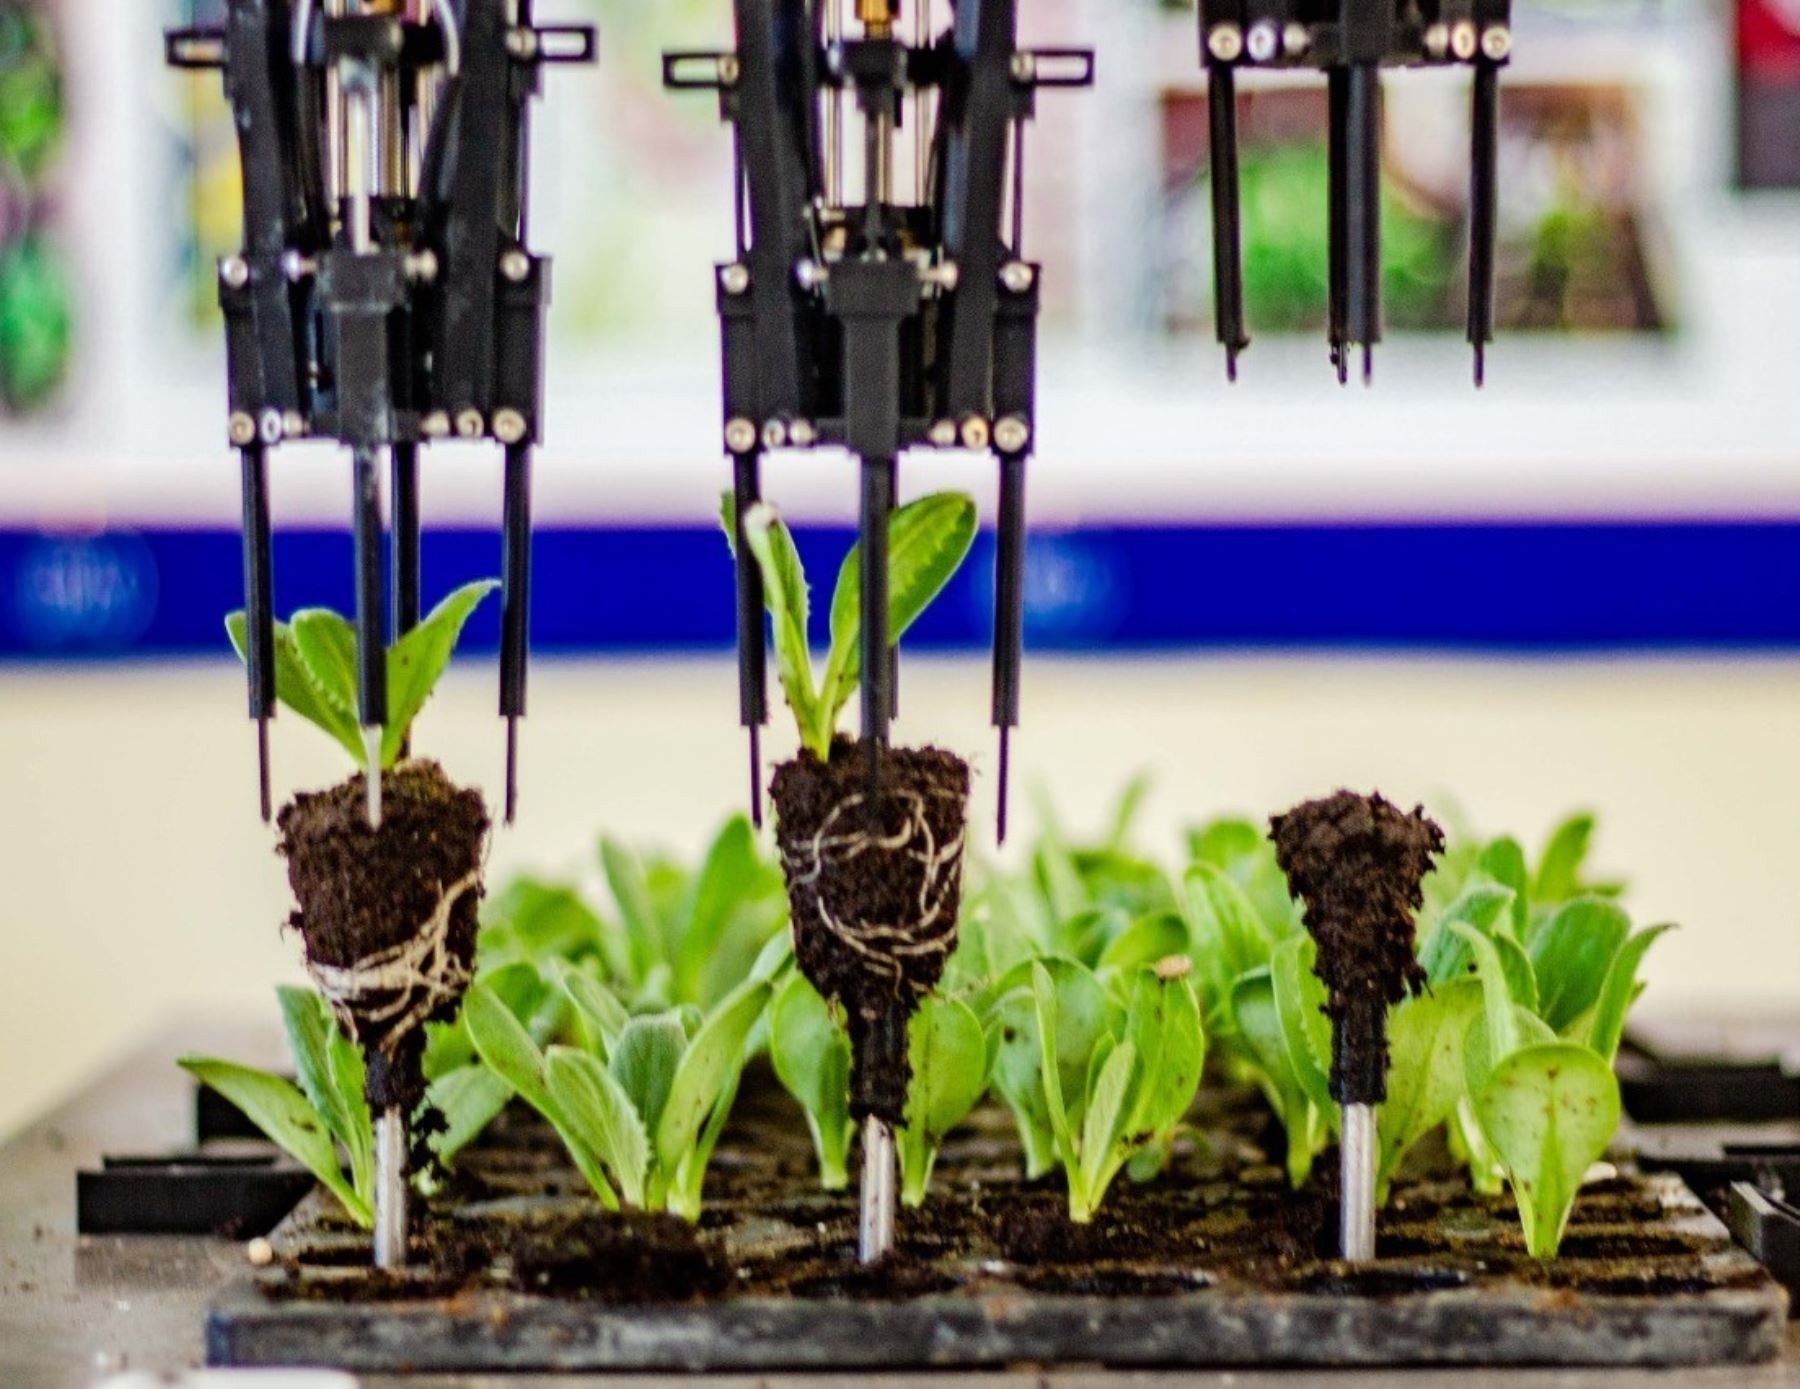 Investigadores de la Universidad Privada Antenor Orrego de Trujillo crearon un nuevo prototipo robot que mejora la siembra de semillas en la agroindustria, una versión mejorada, y con más funciones, del anterior equipo. ANDINA/Difusión